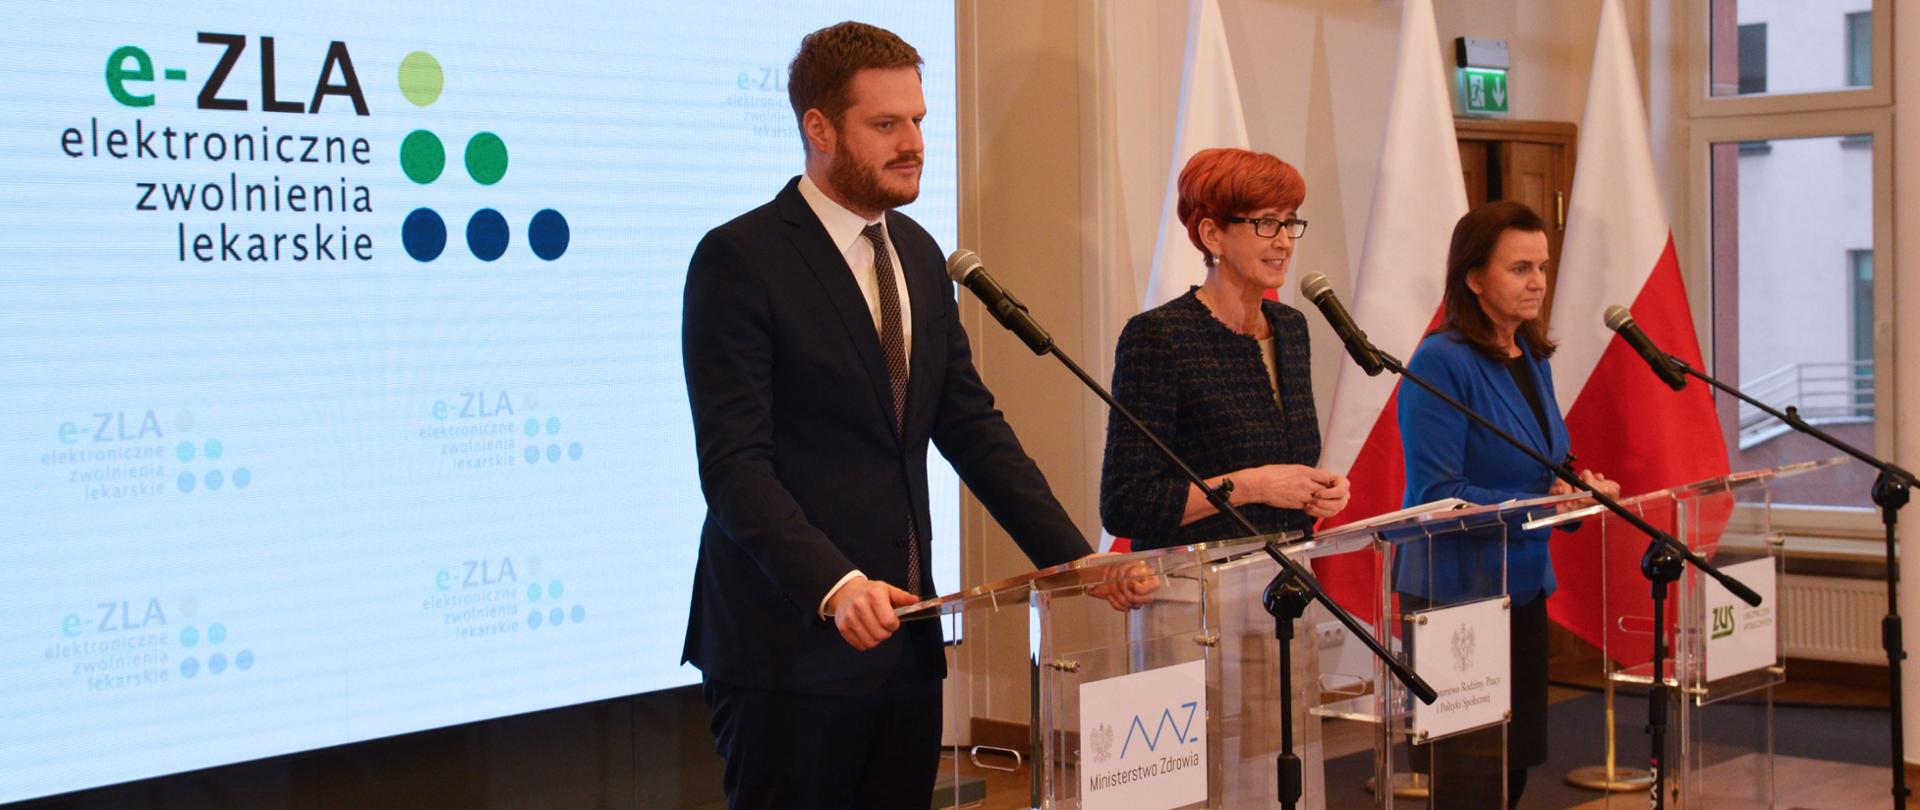 E-zwolnienia wdrożone z sukcesem - briefing prasowy z udziałem minister Elżbiety Rafalskiej, wiceministra zdrowia Janusza Cieszyńskiego i prezes ZUS Gertrudy Uścińskiej. 